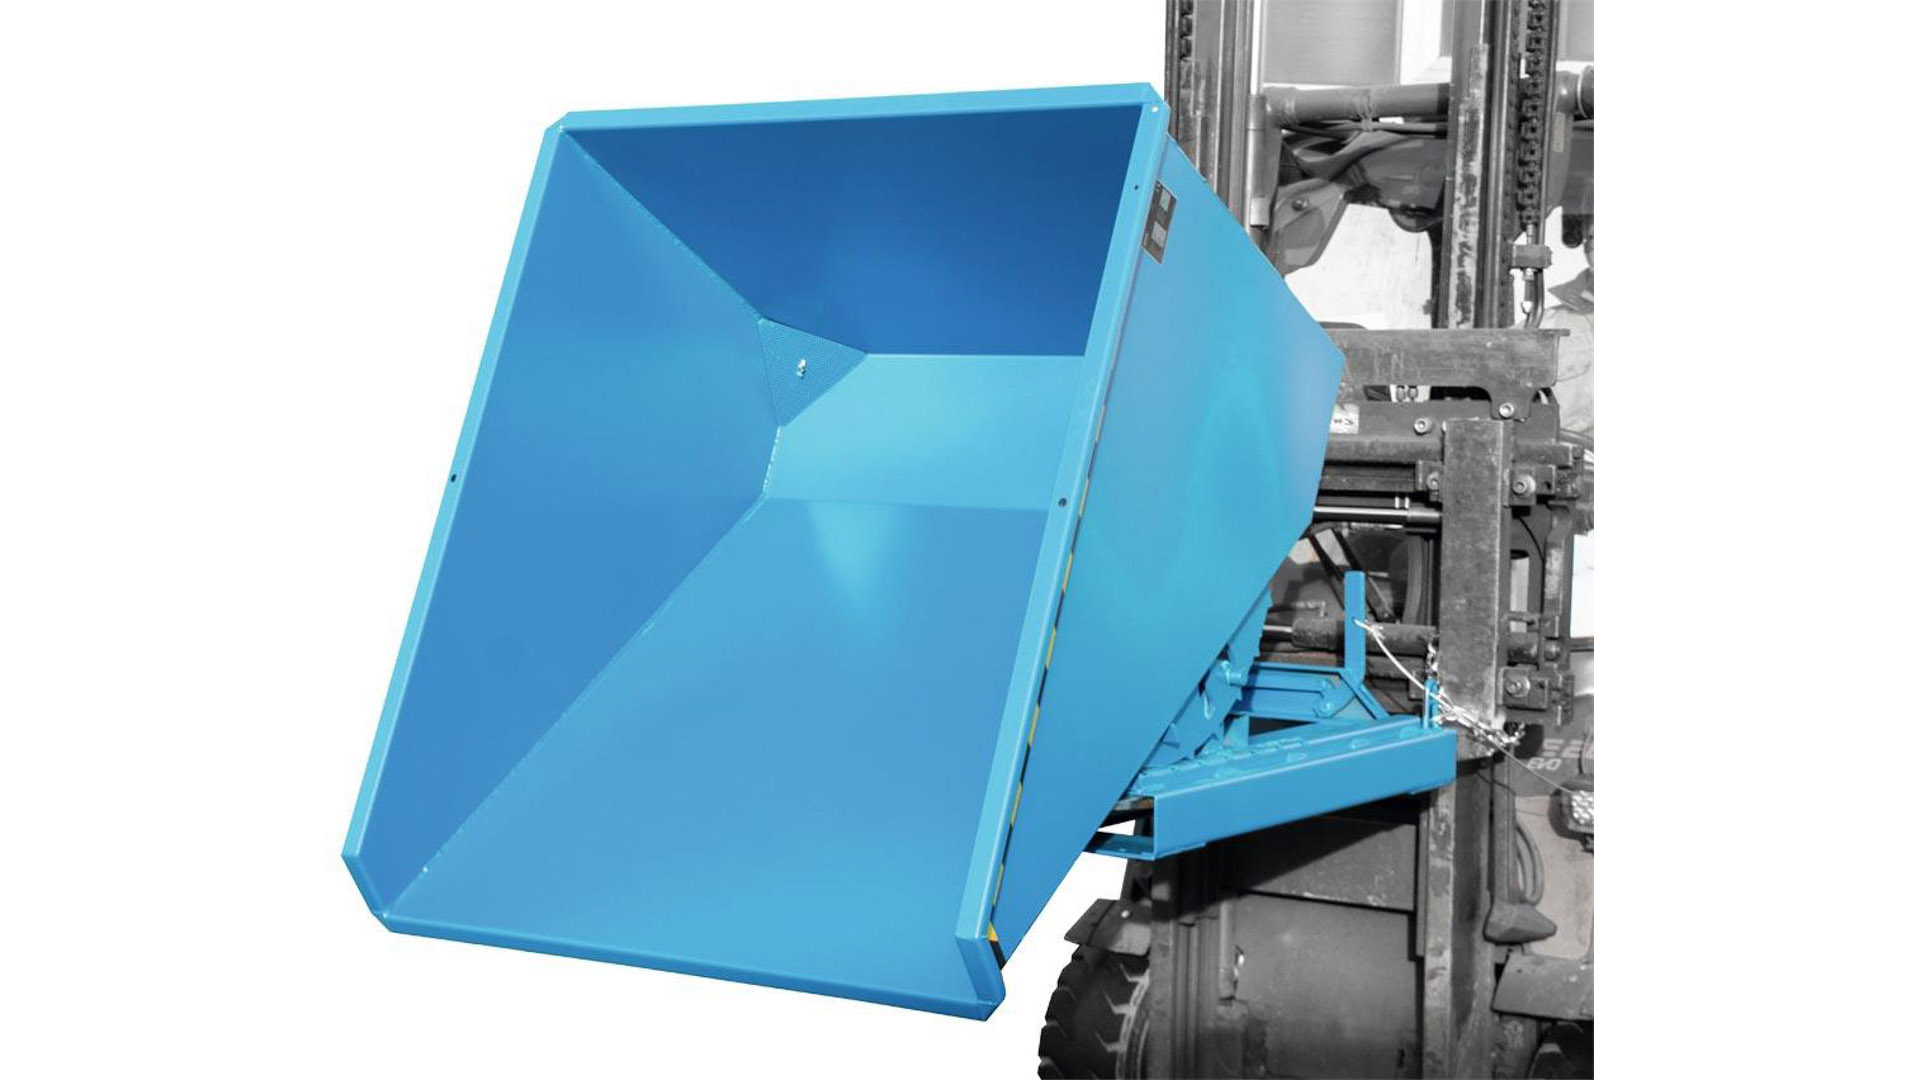 Späne-Selbstkippbehälter mit Abrollsystem, Volumen 0,60 cbm, LxBxH 1260x1070x835 mm, lackiert RAL 5012 blau